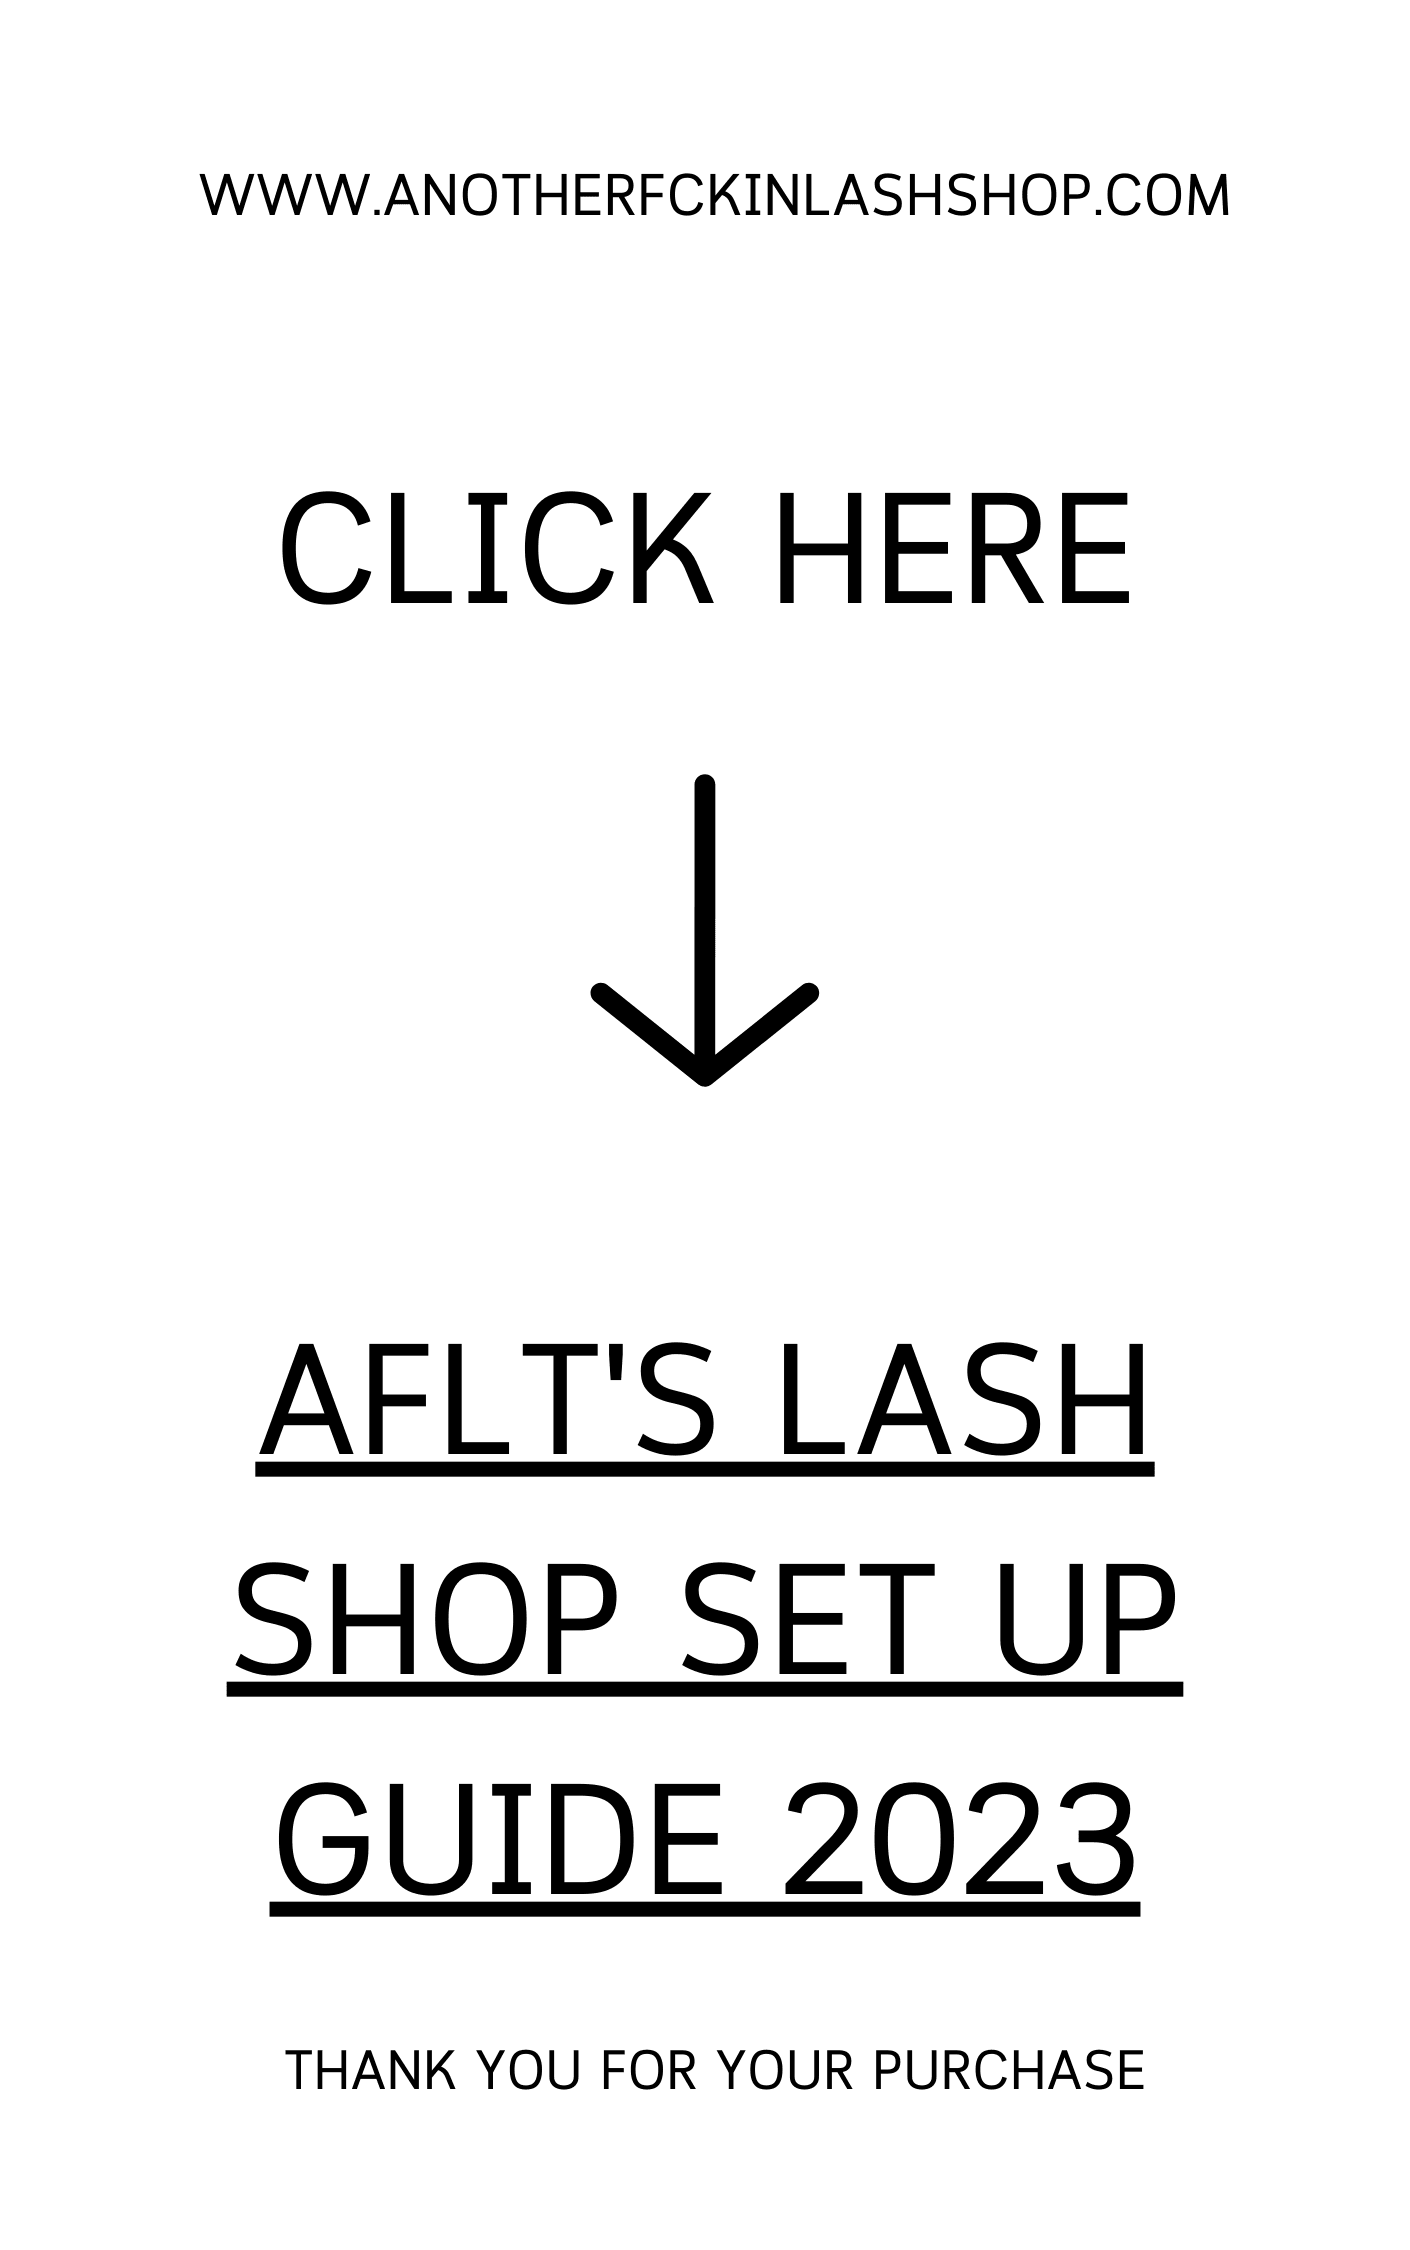 AFLT'S LASH SHOP SET UP GUIDE 2023 (SHOPIFY) 2.0 VERSION - anotherfckinlashshop